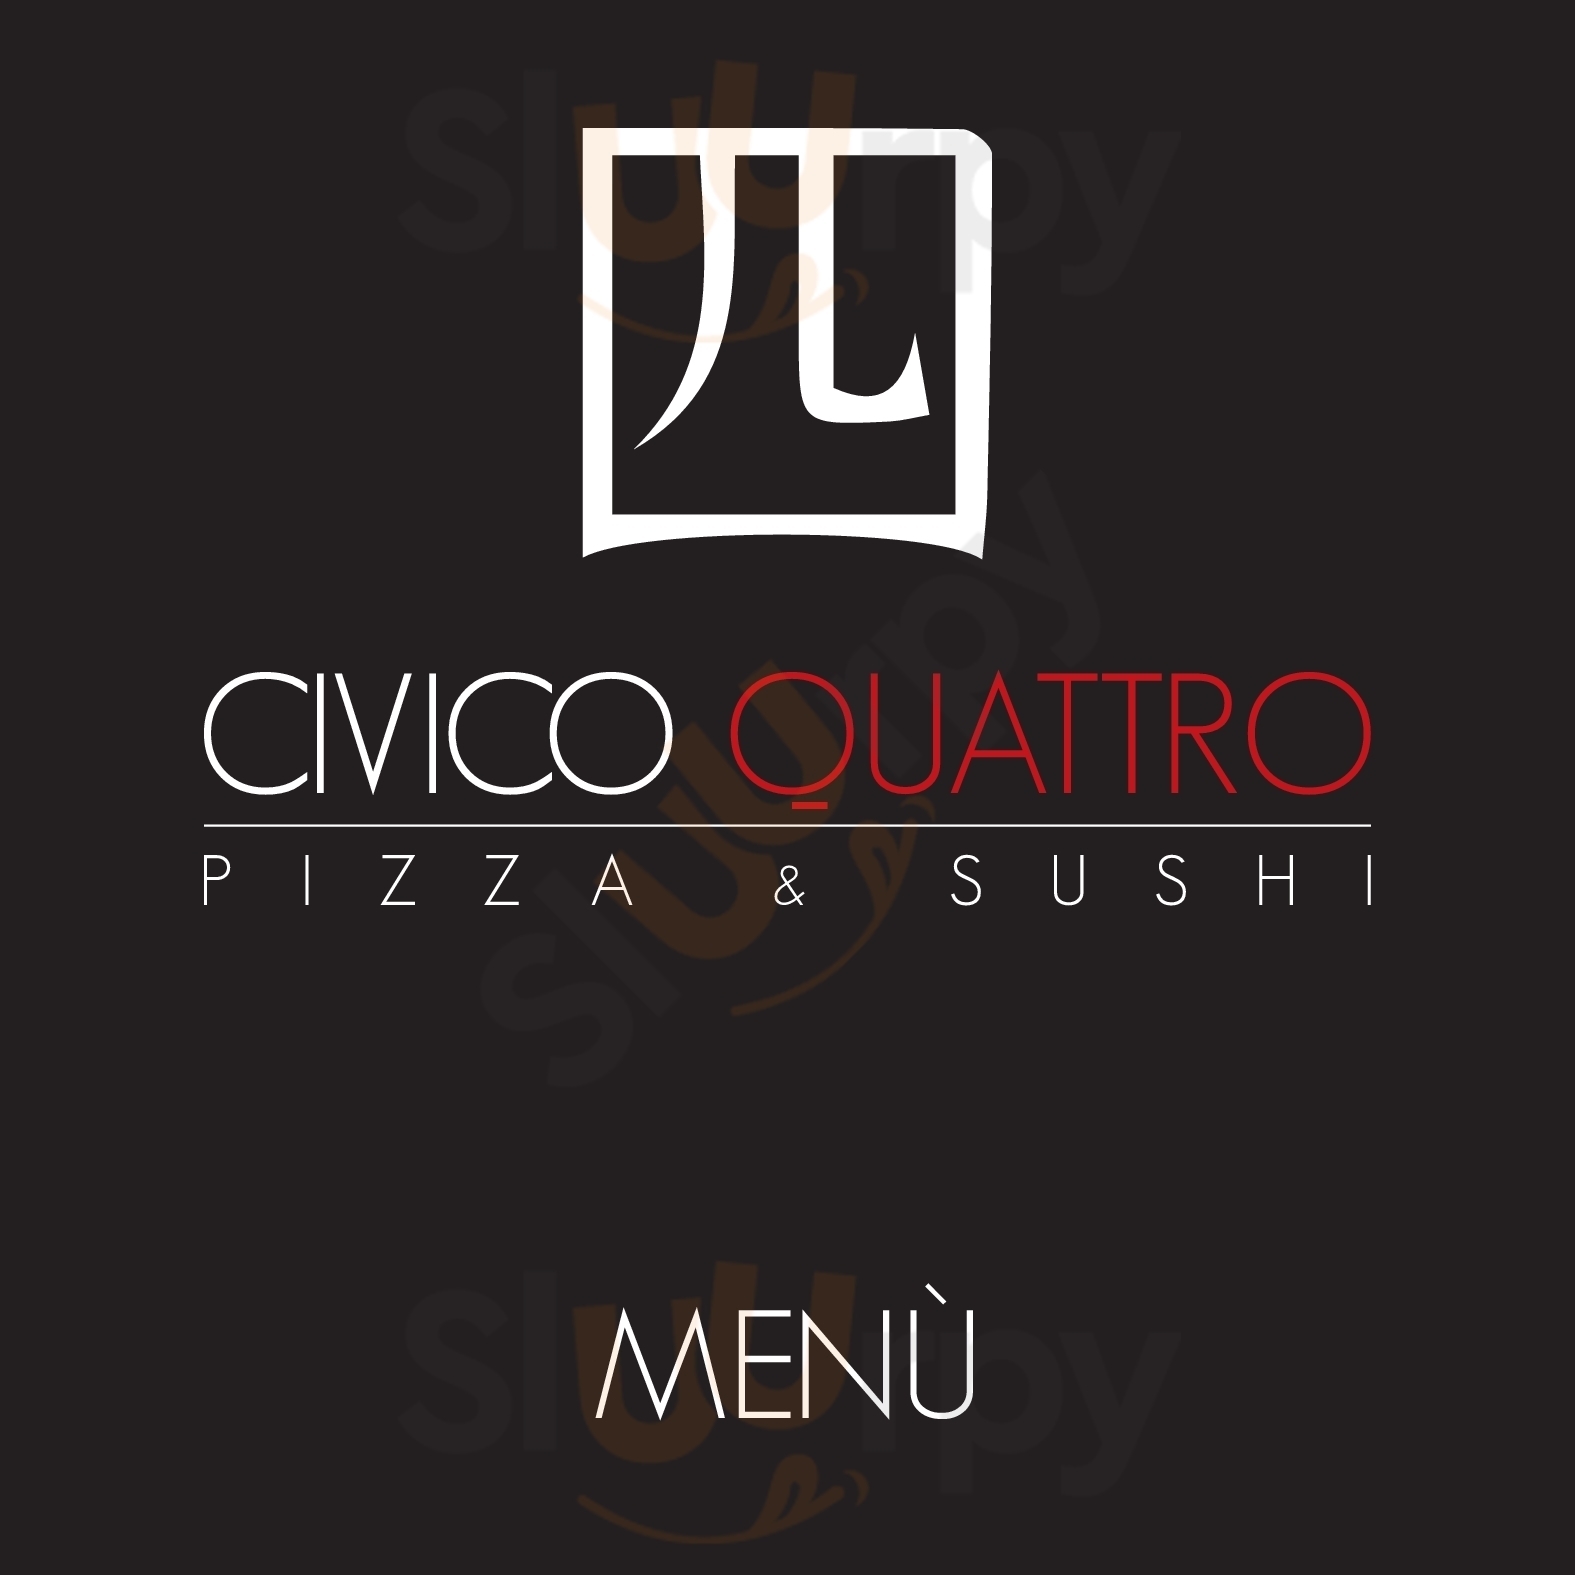 Civico Quattro Pizza & Sushi Treviglio menù 1 pagina